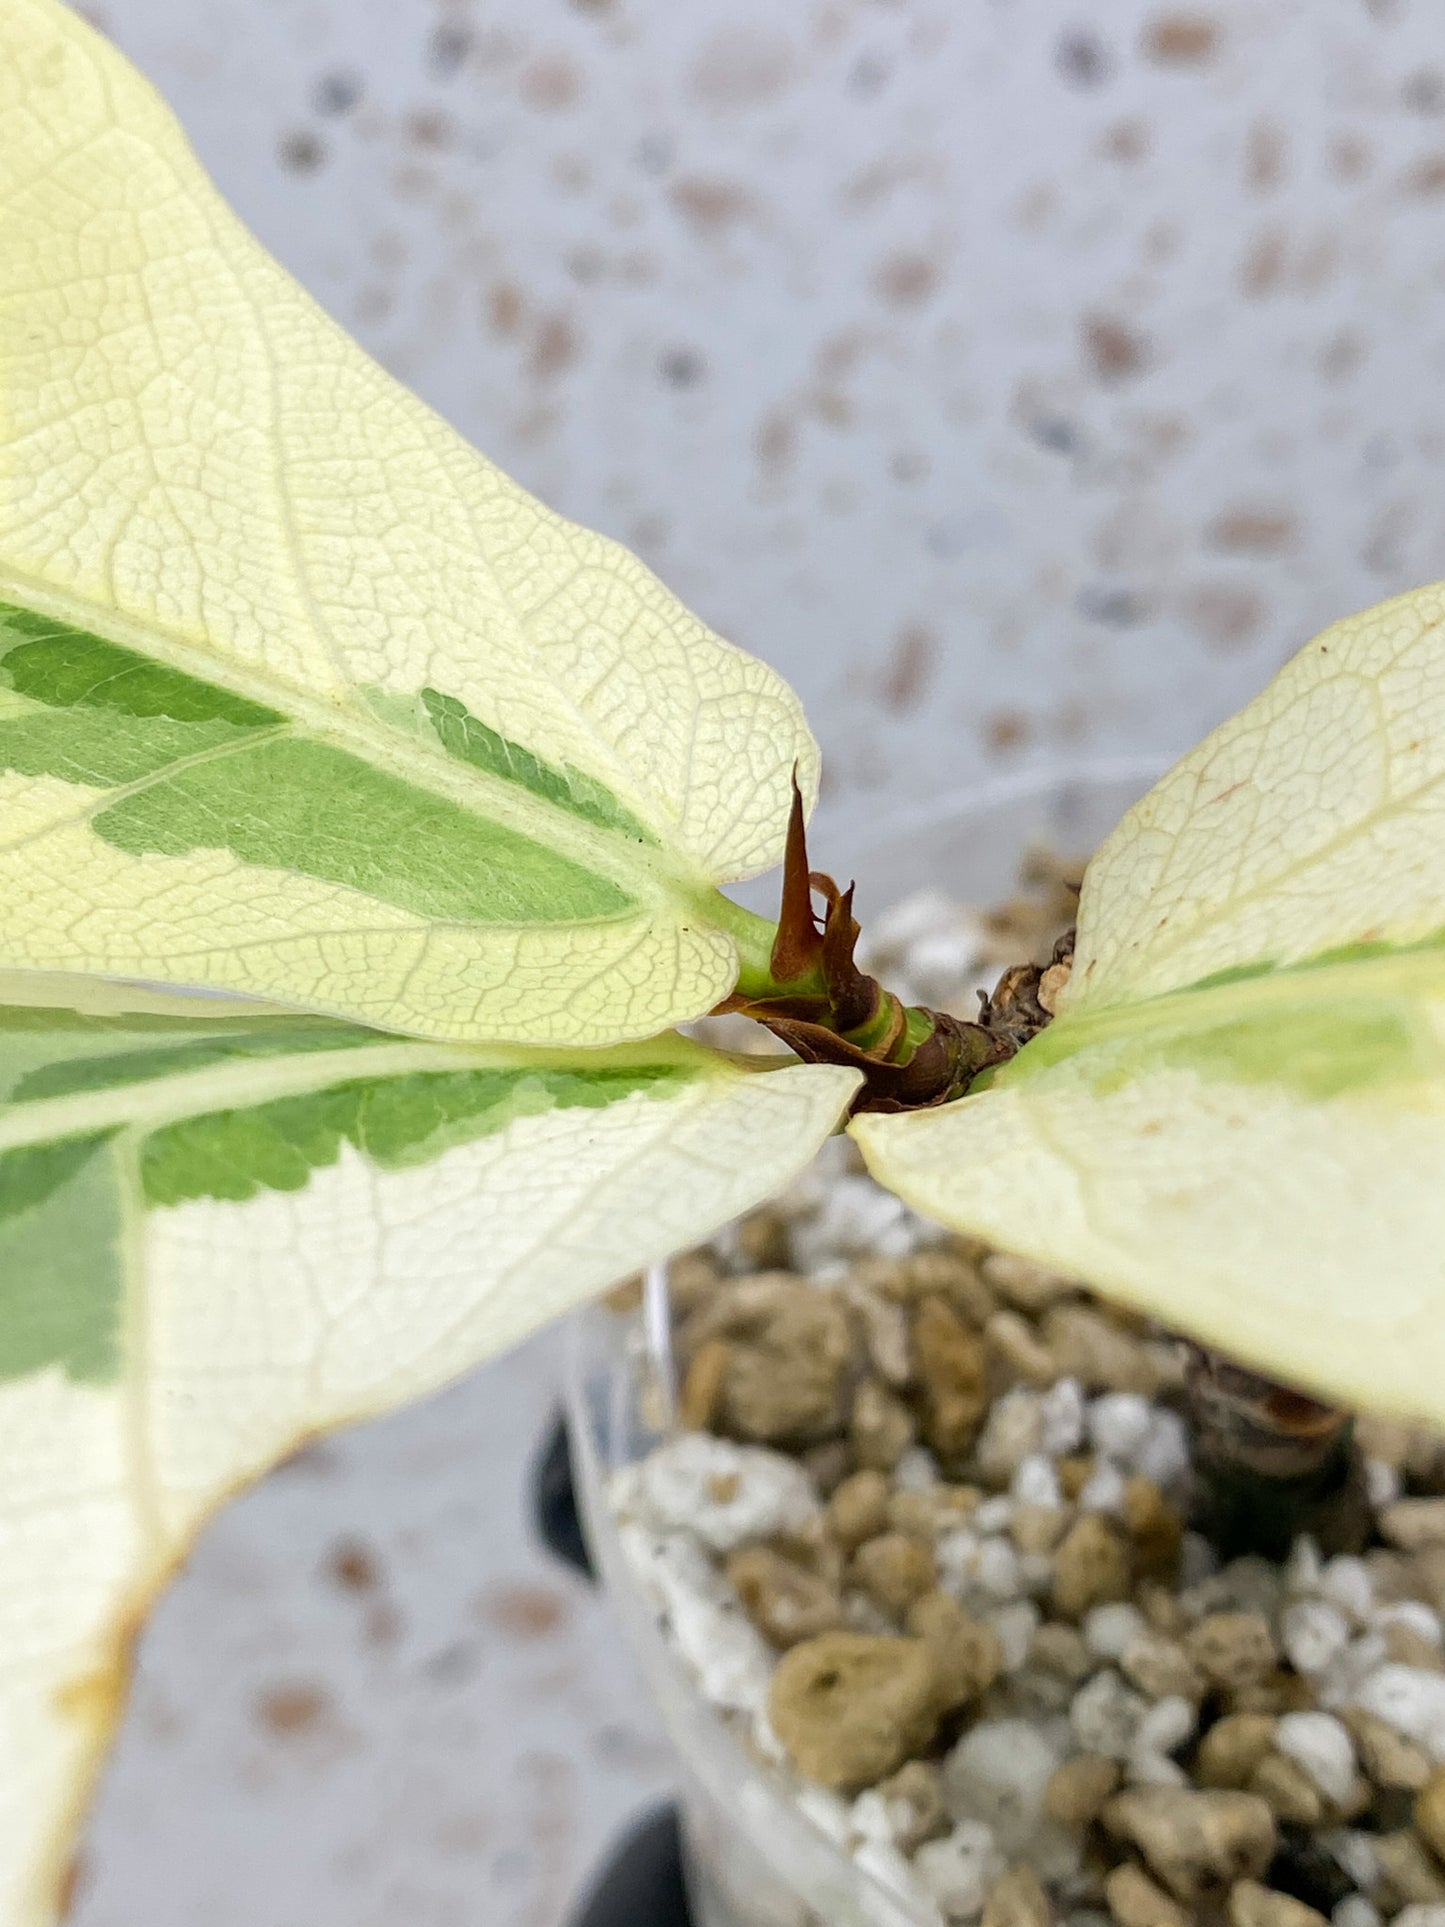 Ficus Lyrata Variegated (Fiddle Leaf Fig) 3 leaves